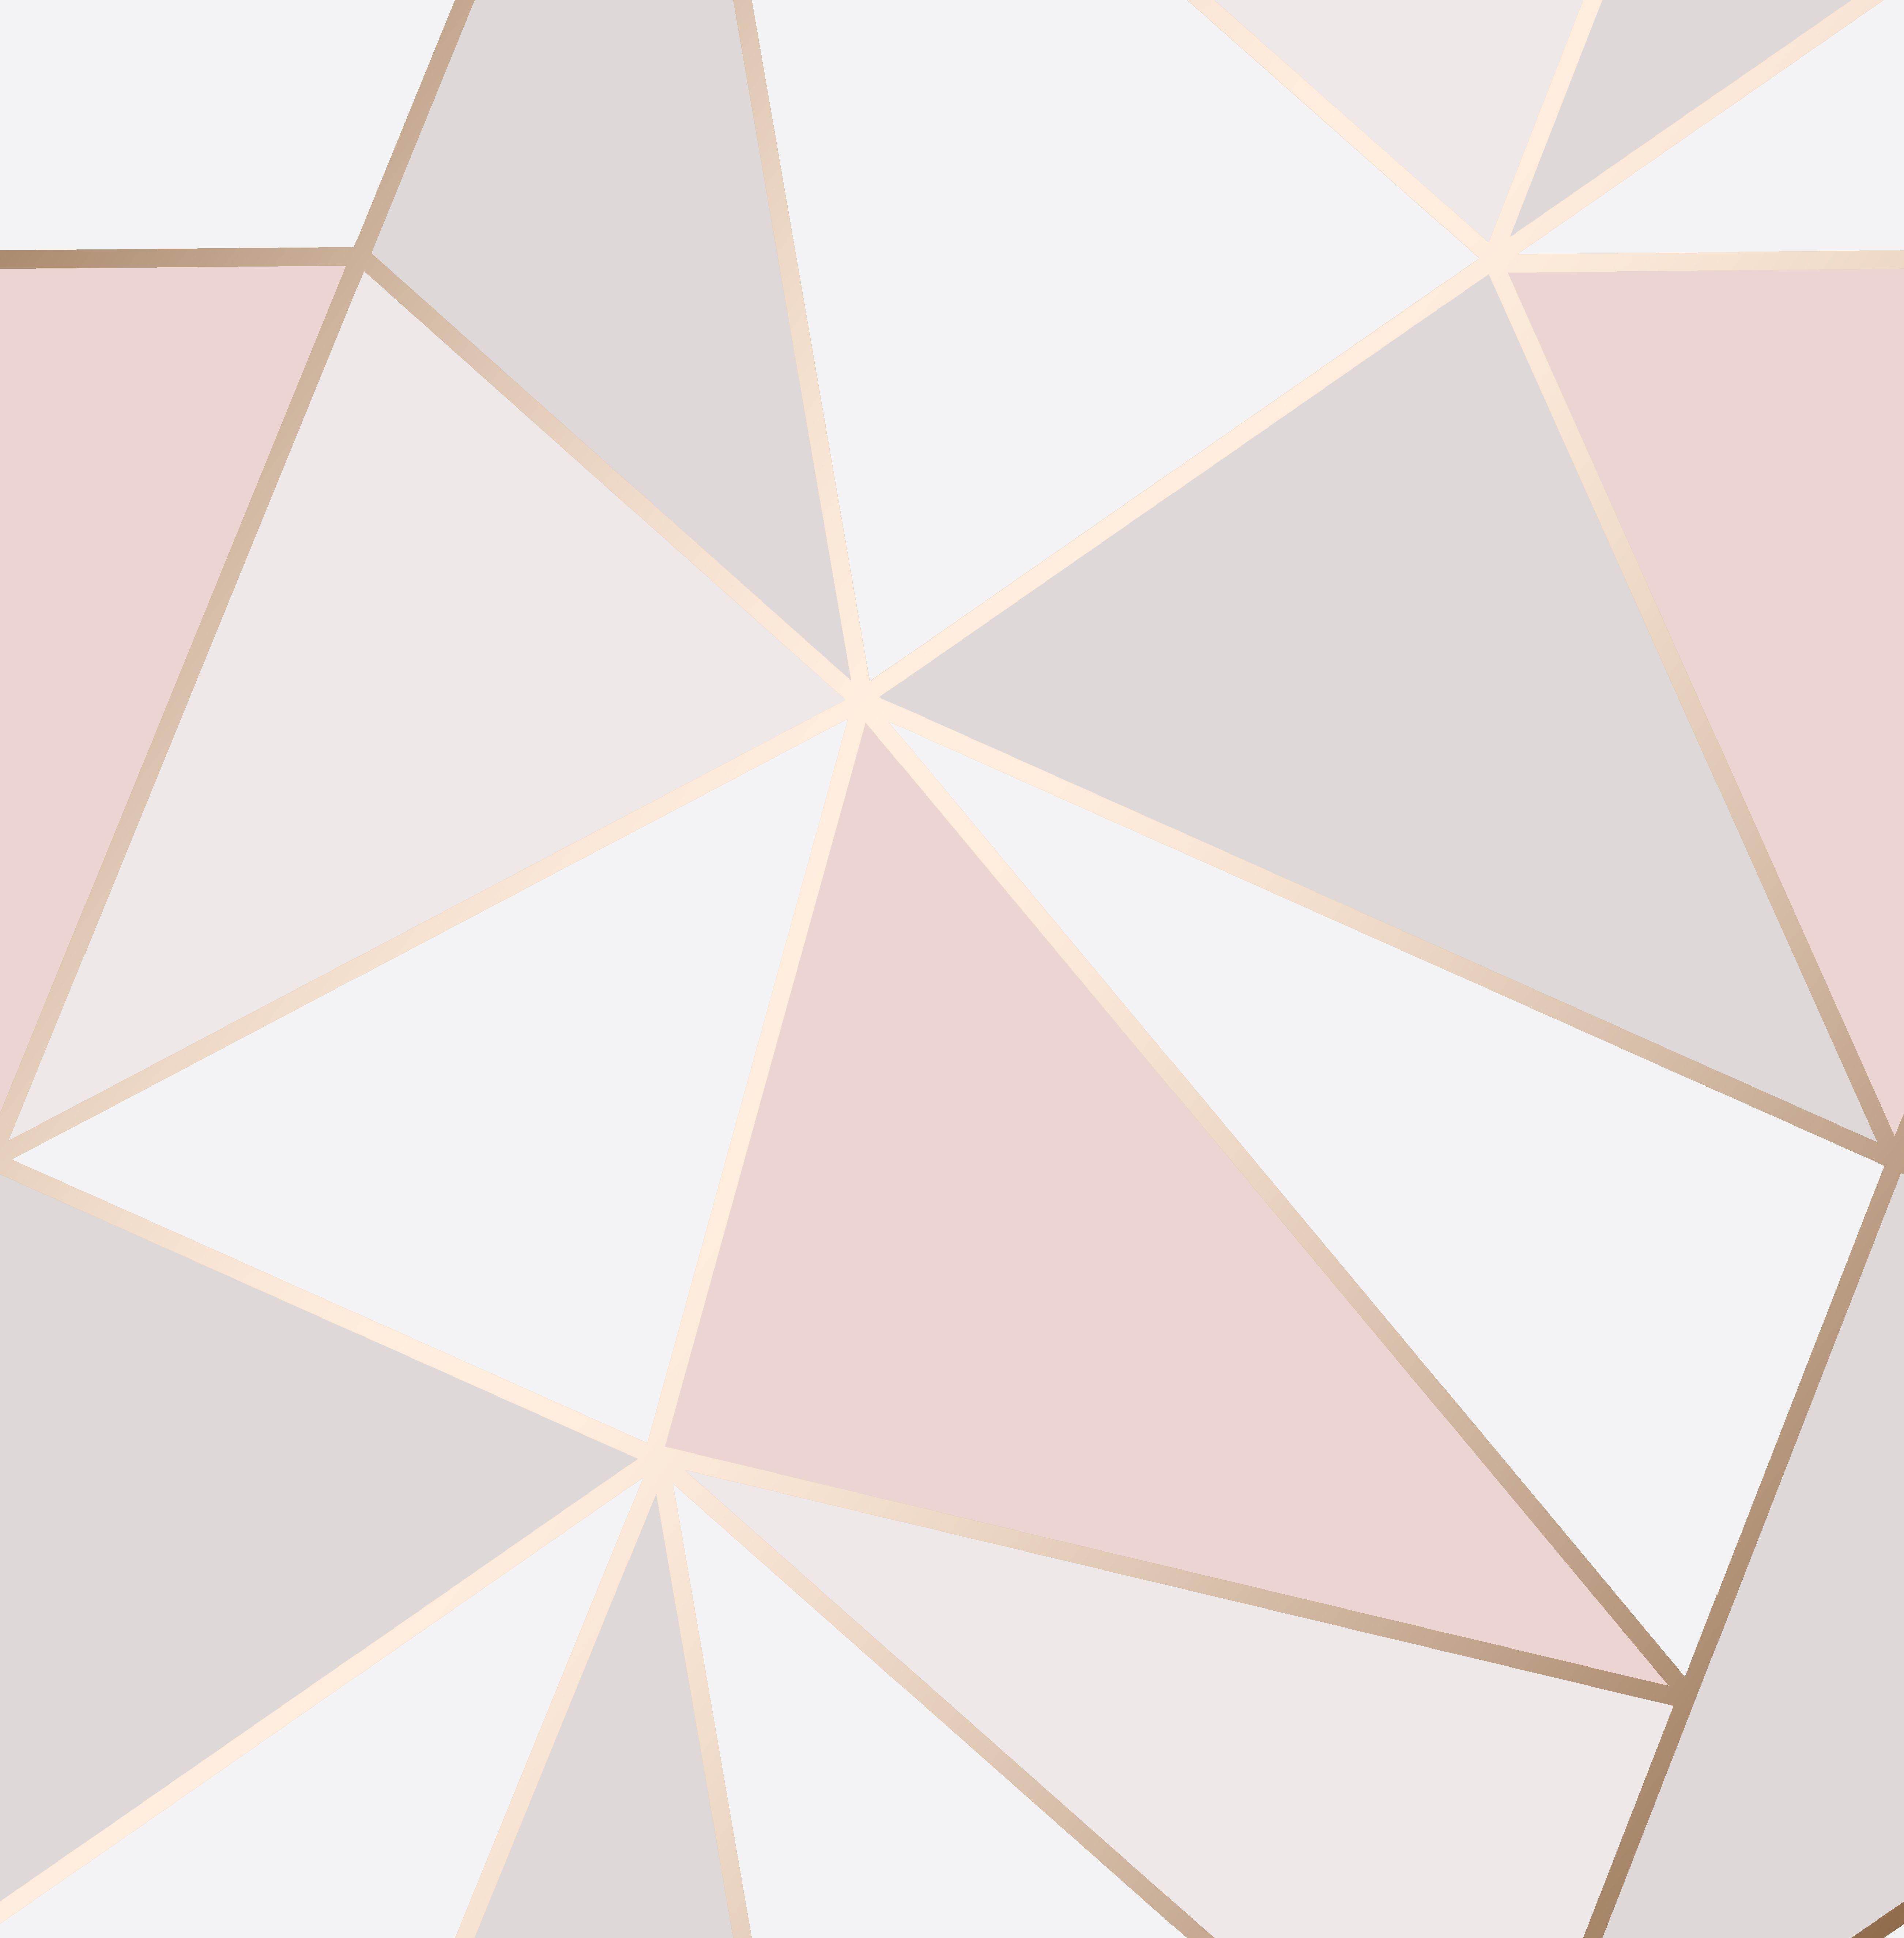 5207x5300 Rose Gold Pink Hình nền Hình học 3D Apex Tam giác Kim loại hiện đại